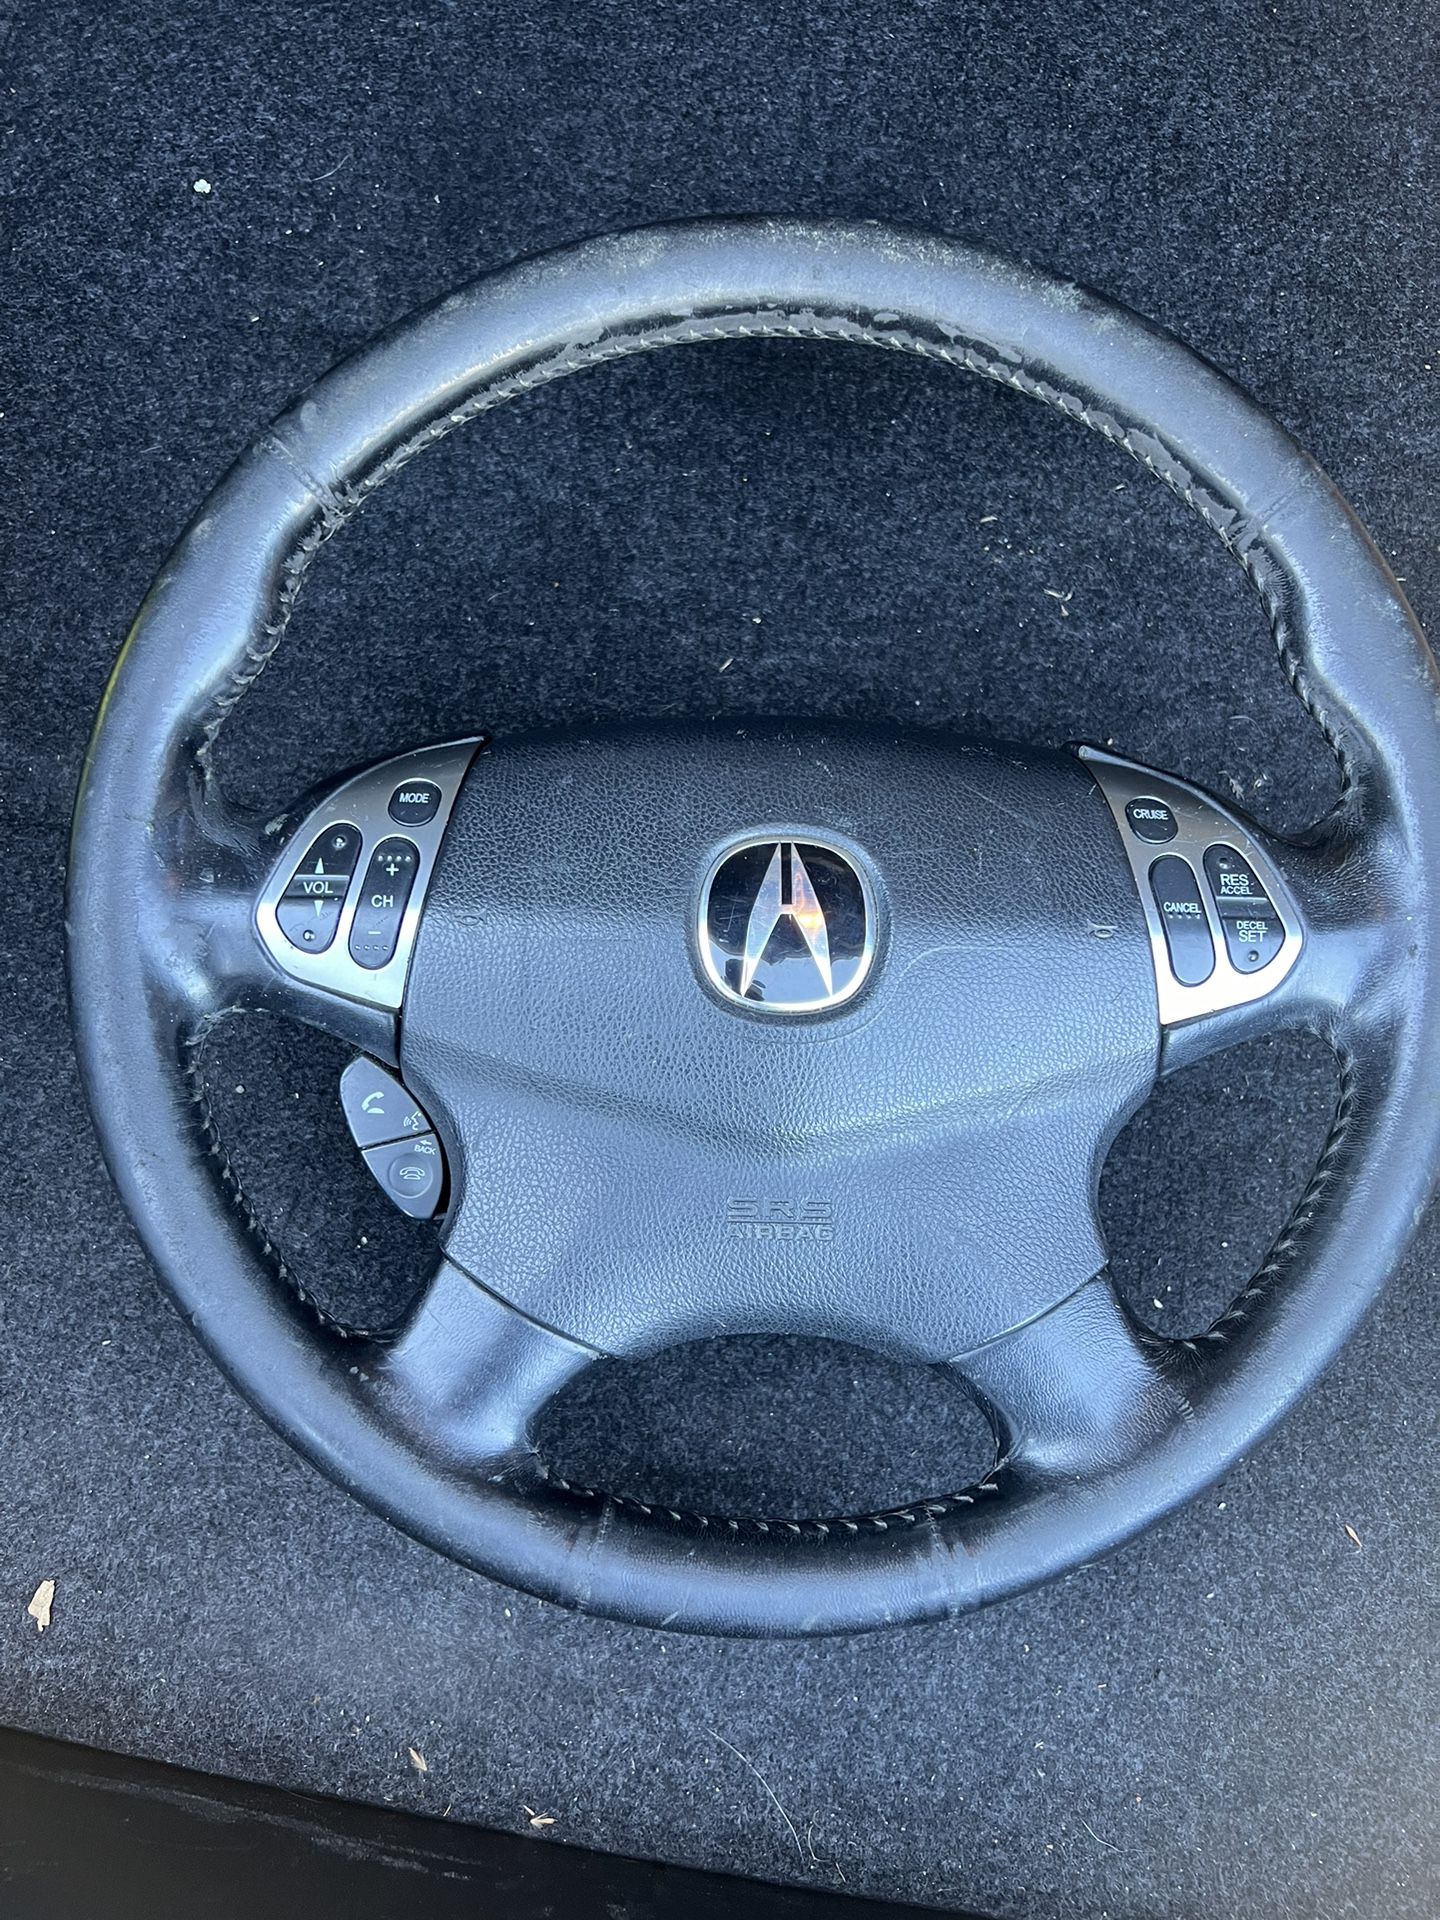 02 TL Steering Wheel 